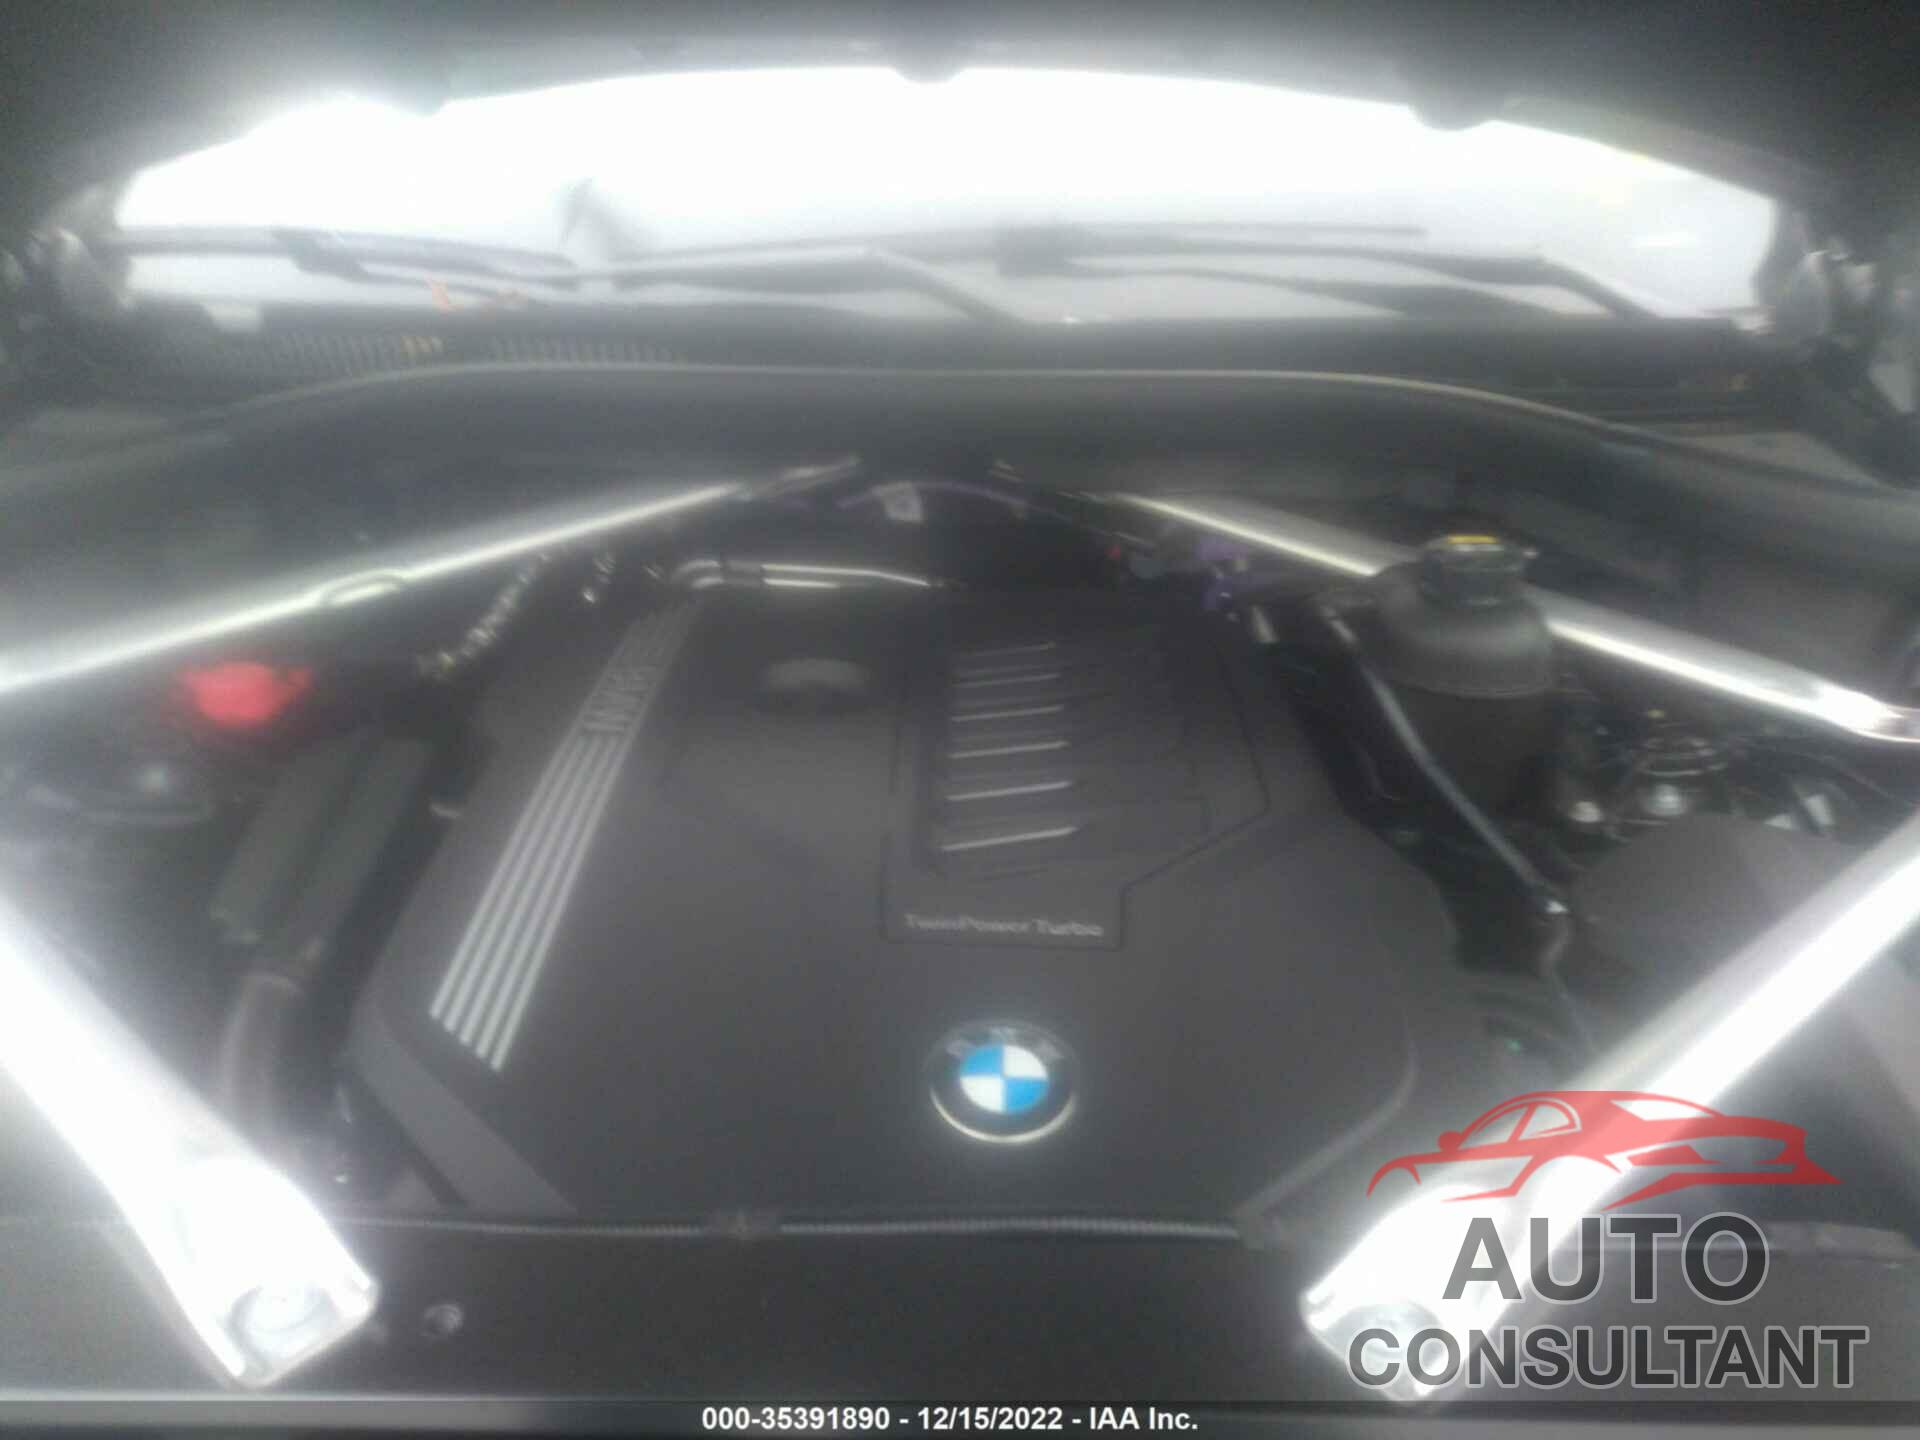 BMW X5 2022 - 5UXCR6C07N9N19744